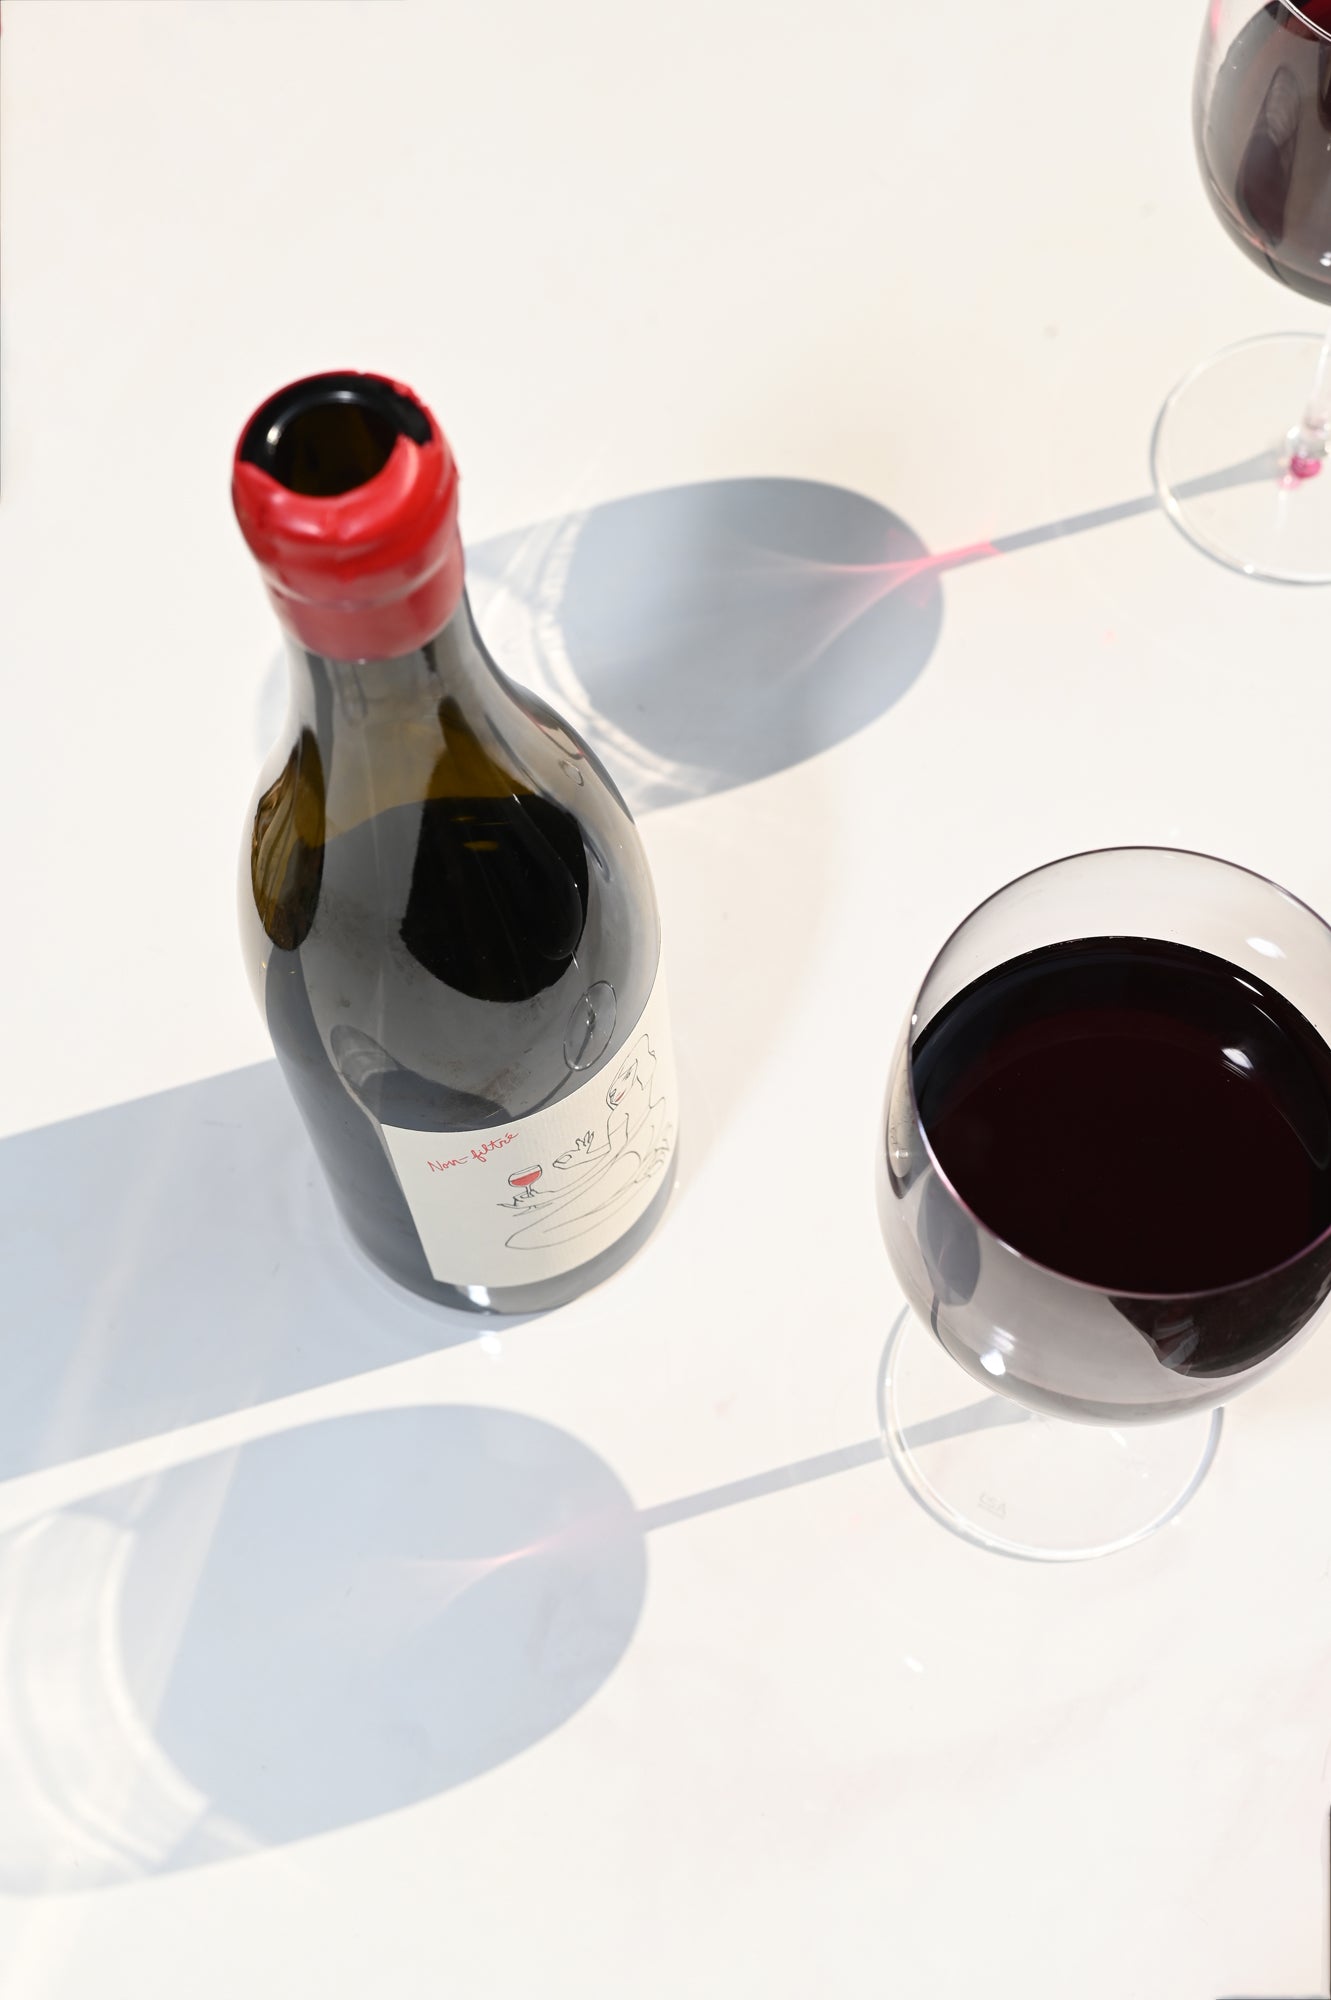 2022 Old Vines Carignan